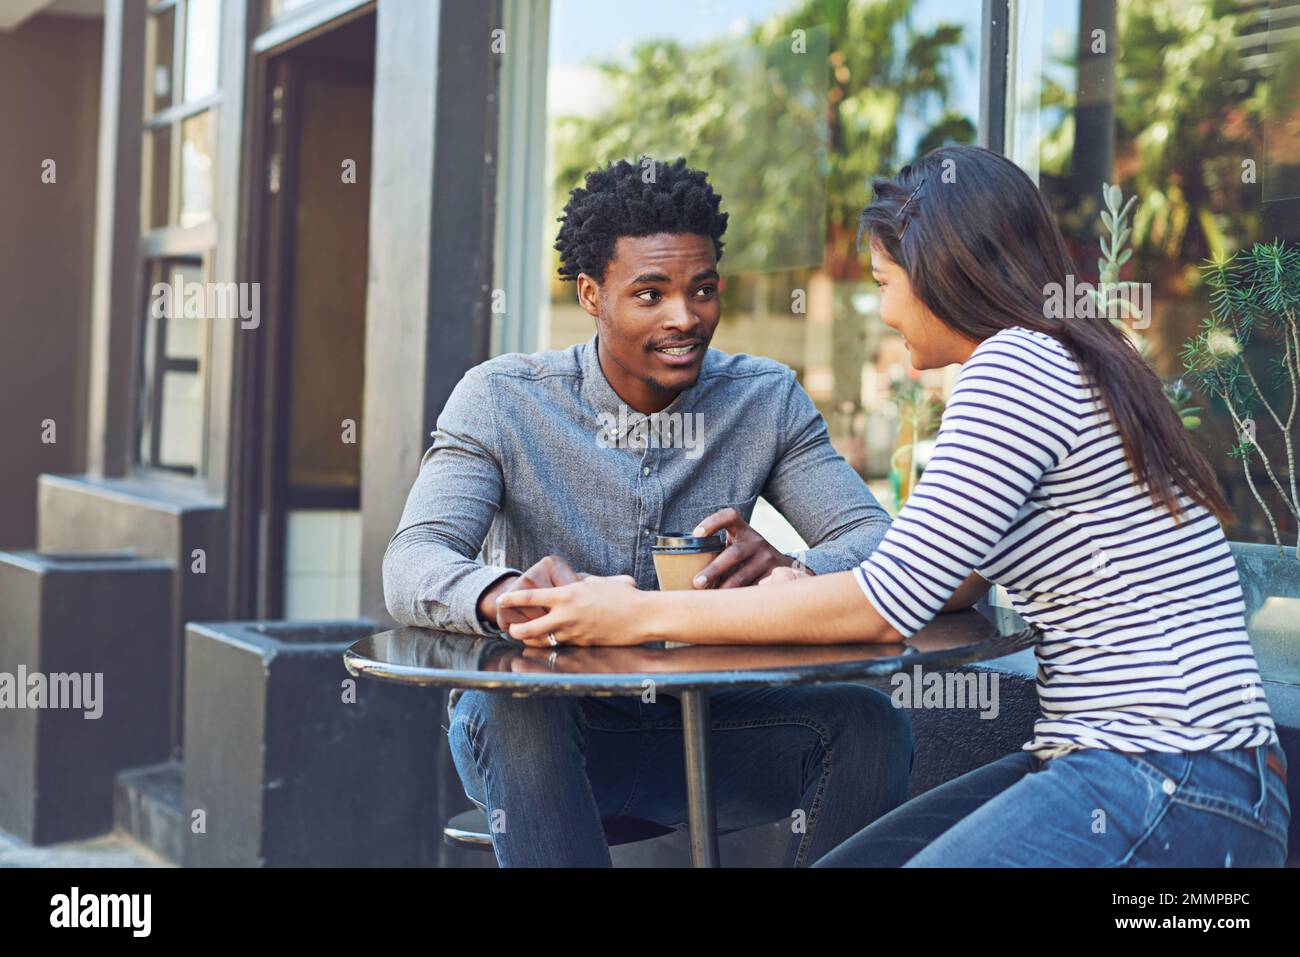 Ich bin froh, dass du mich auf einen Kaffee eingeladen hast. Ein junges Paar auf einem Kaffee-Date in einem Straßencafé. Stockfoto